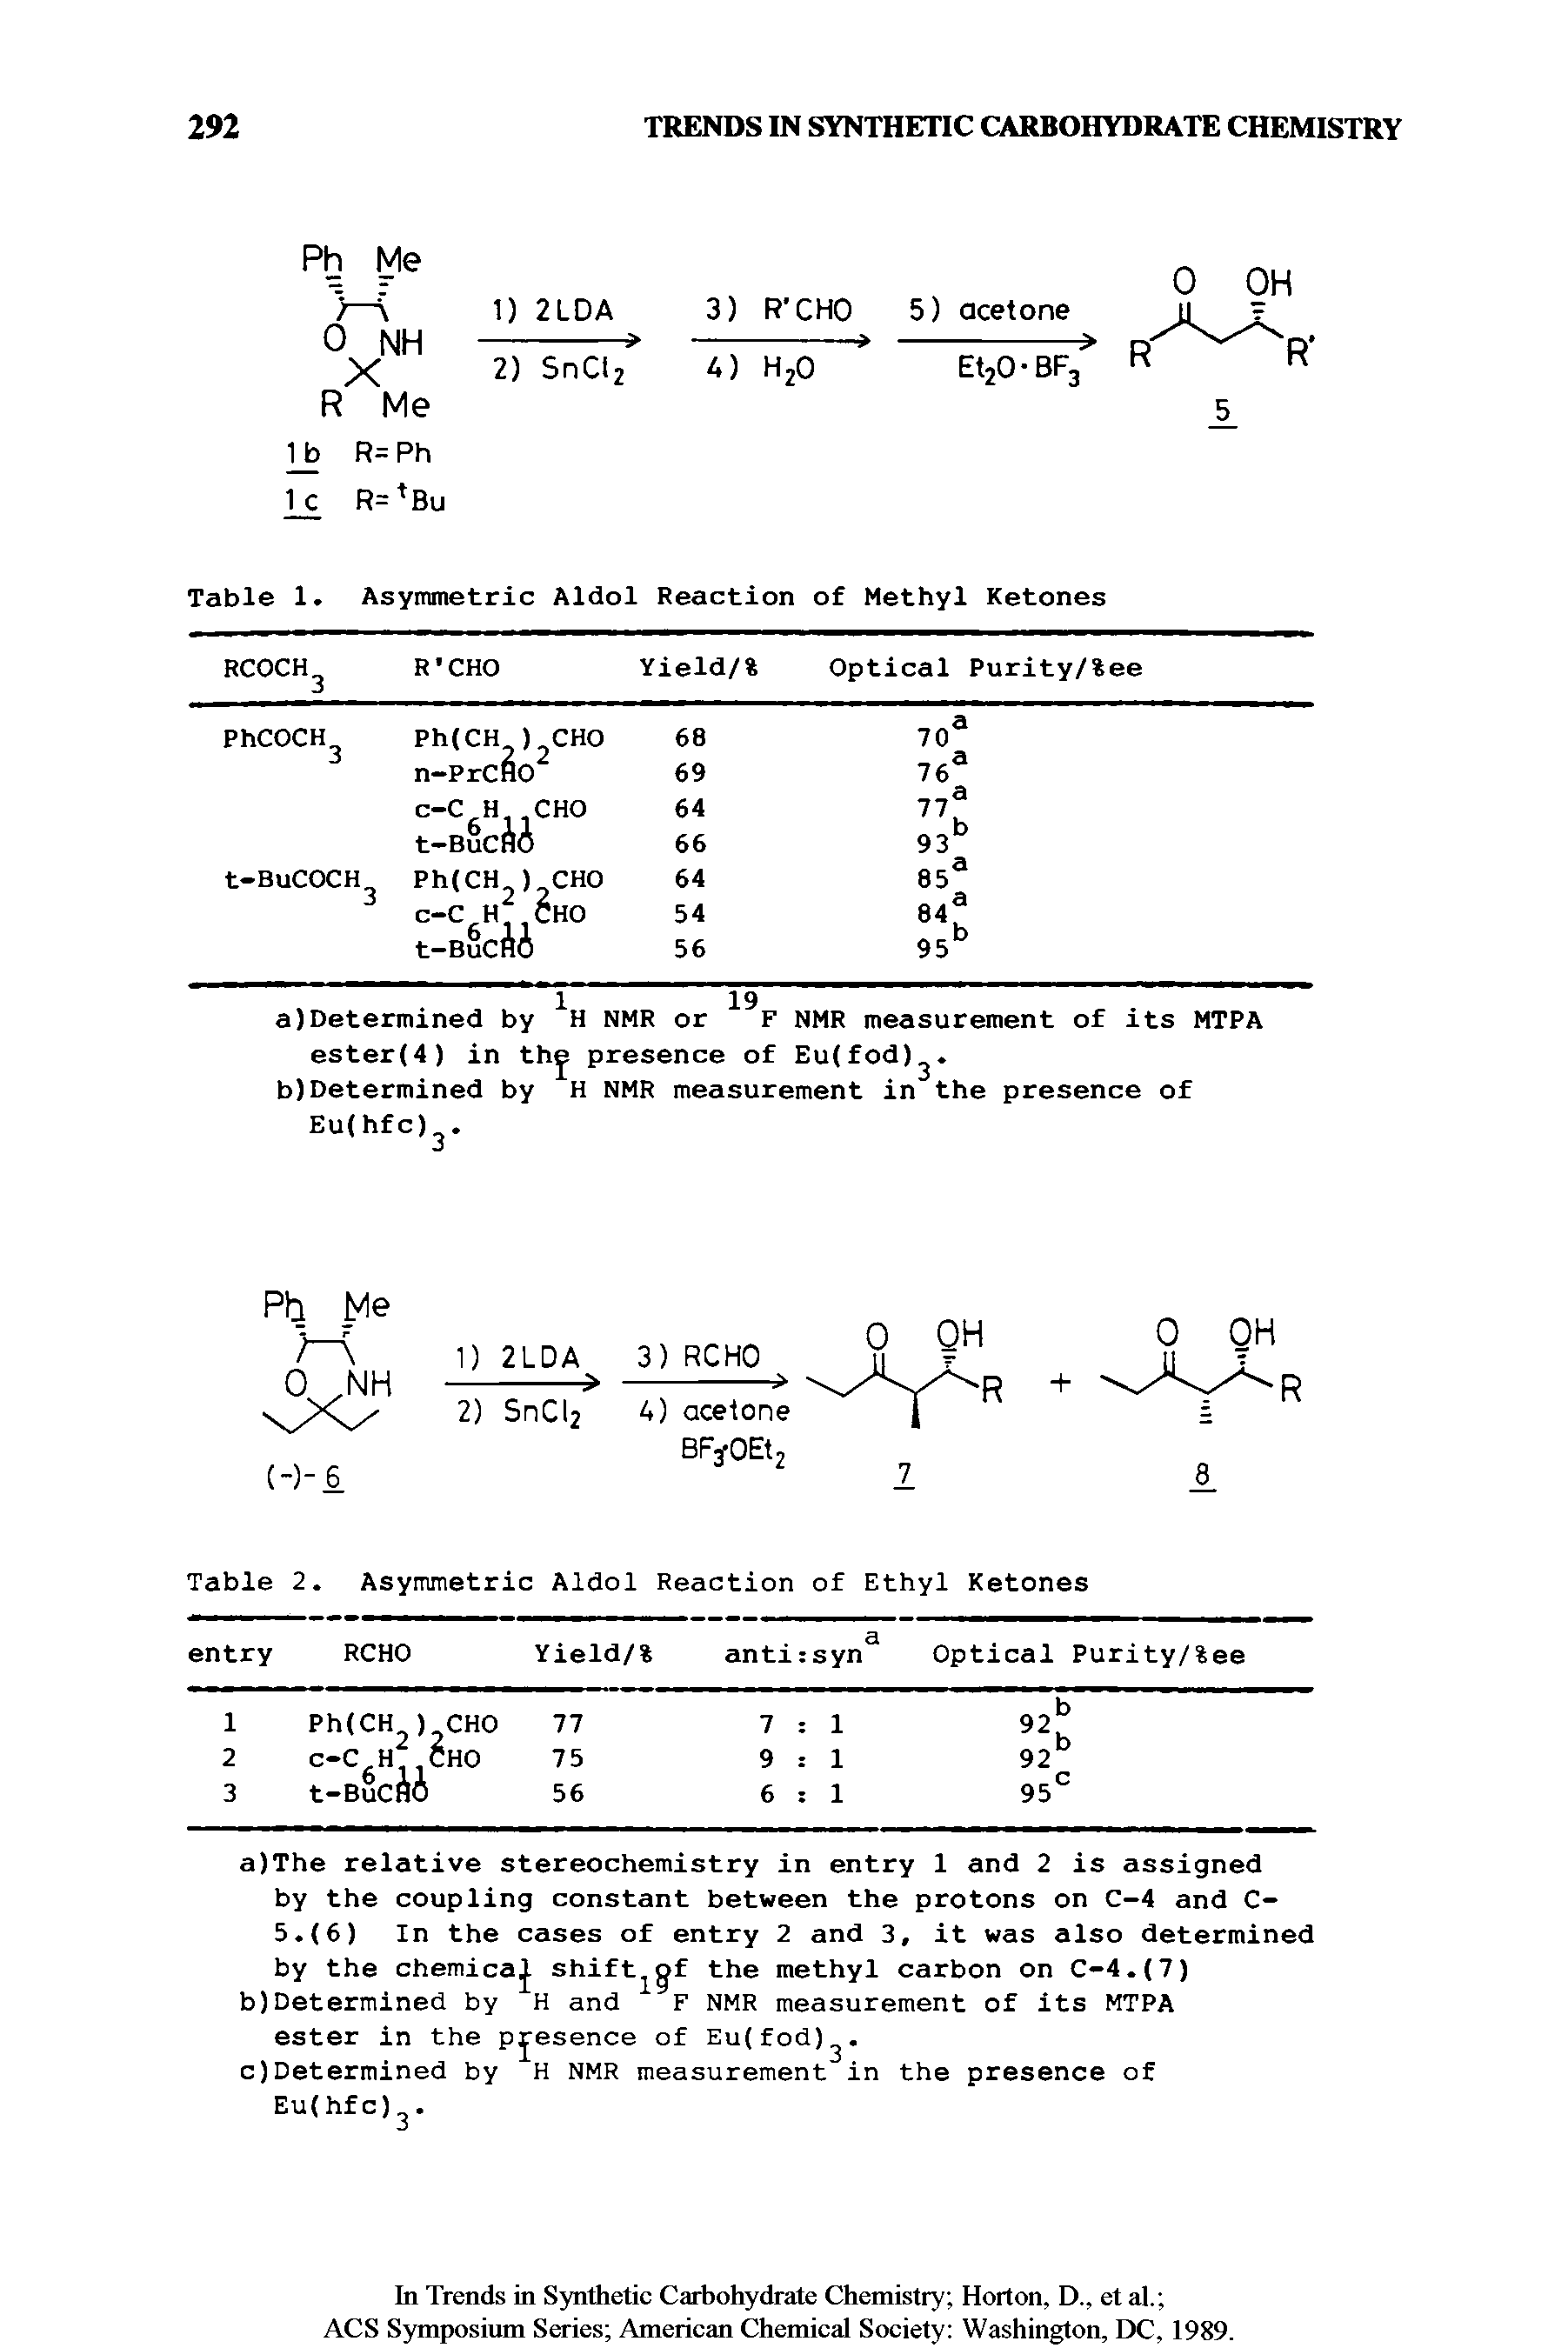 Table 1. Asymmetric Aldol Reaction of Methyl Ketones...